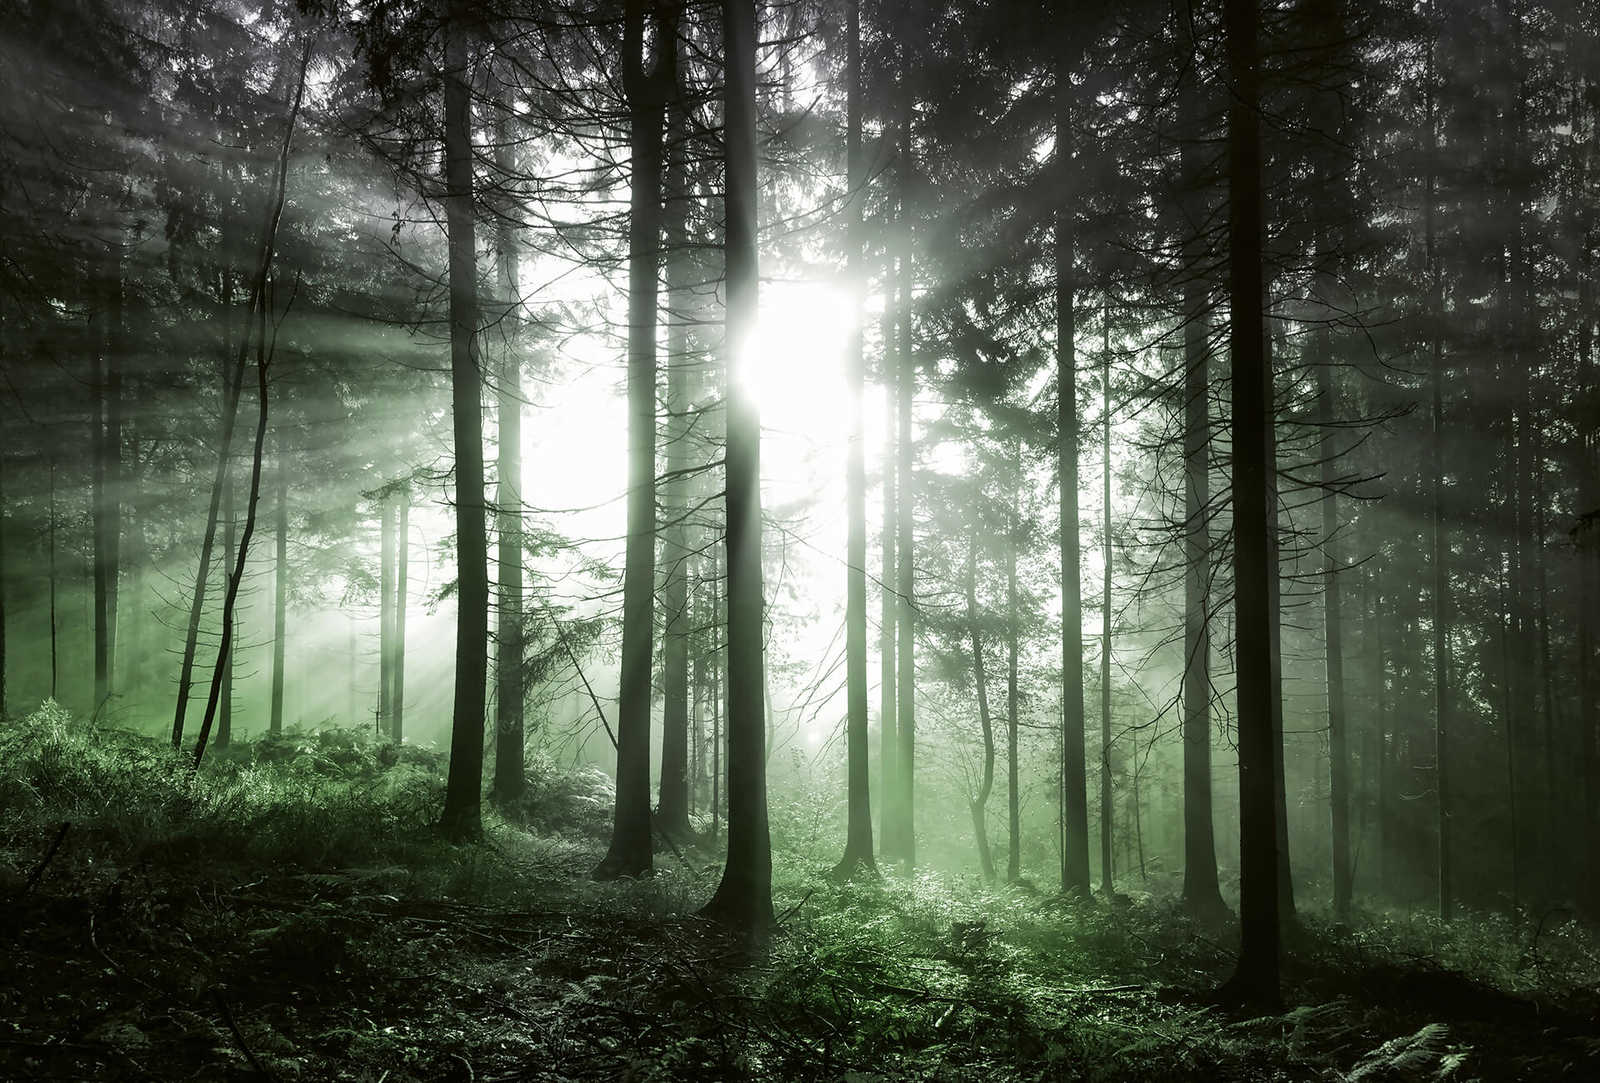 Fototapete Wald mit Lichteinfall – Grün, Schwarz, Weiß
